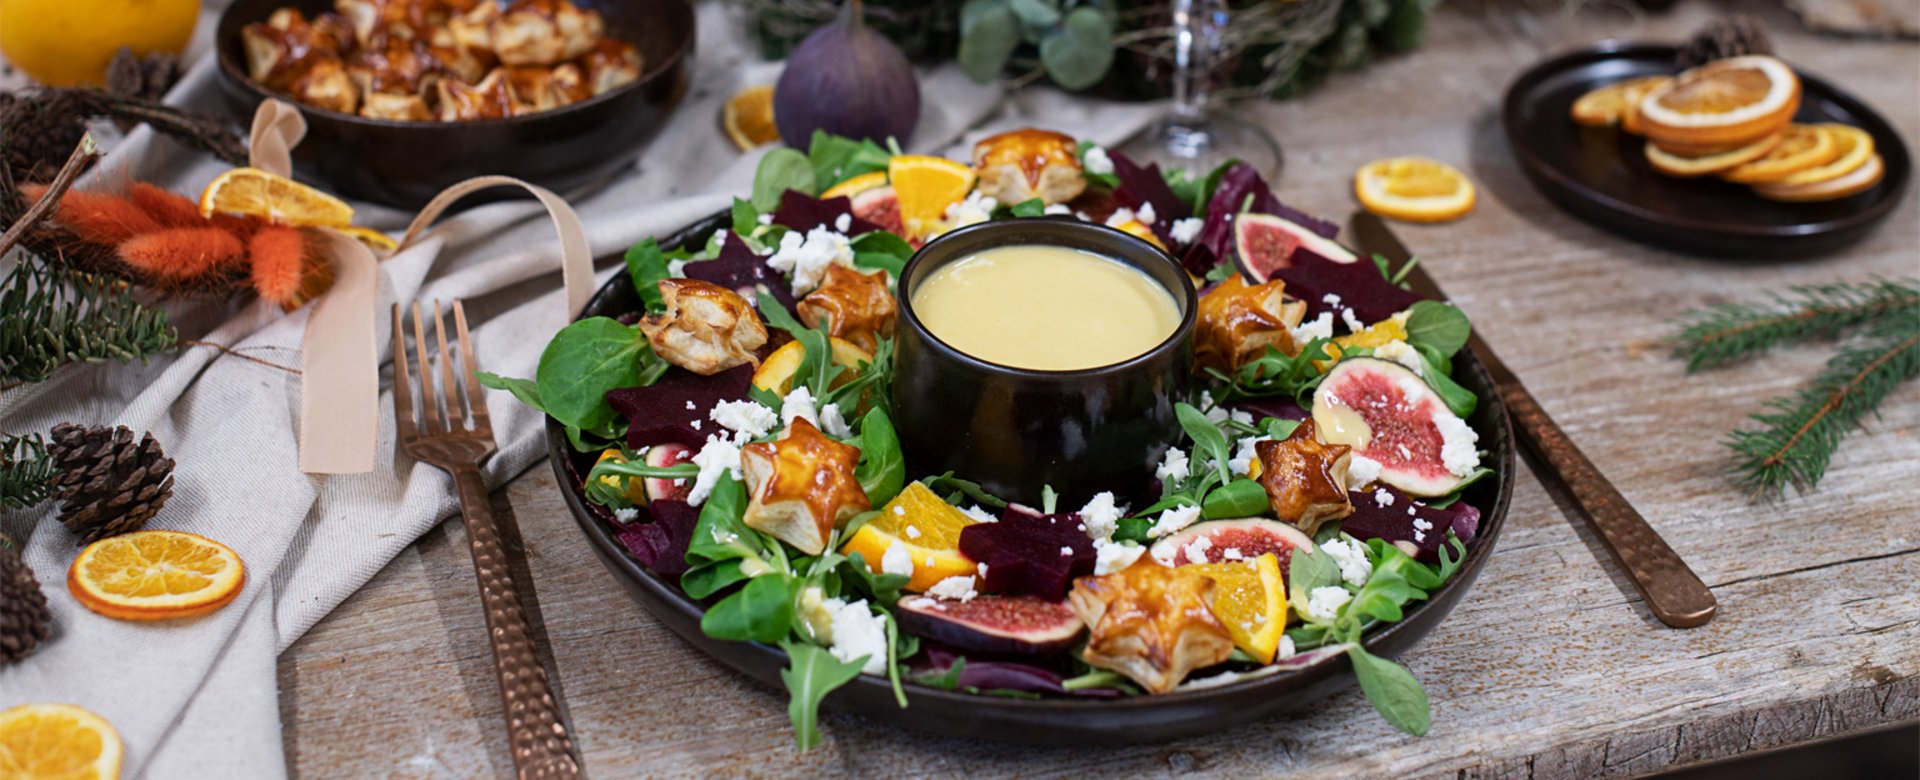 Festlicher Salatkranz mit pikanten Blätterteig-Senf-Sternen